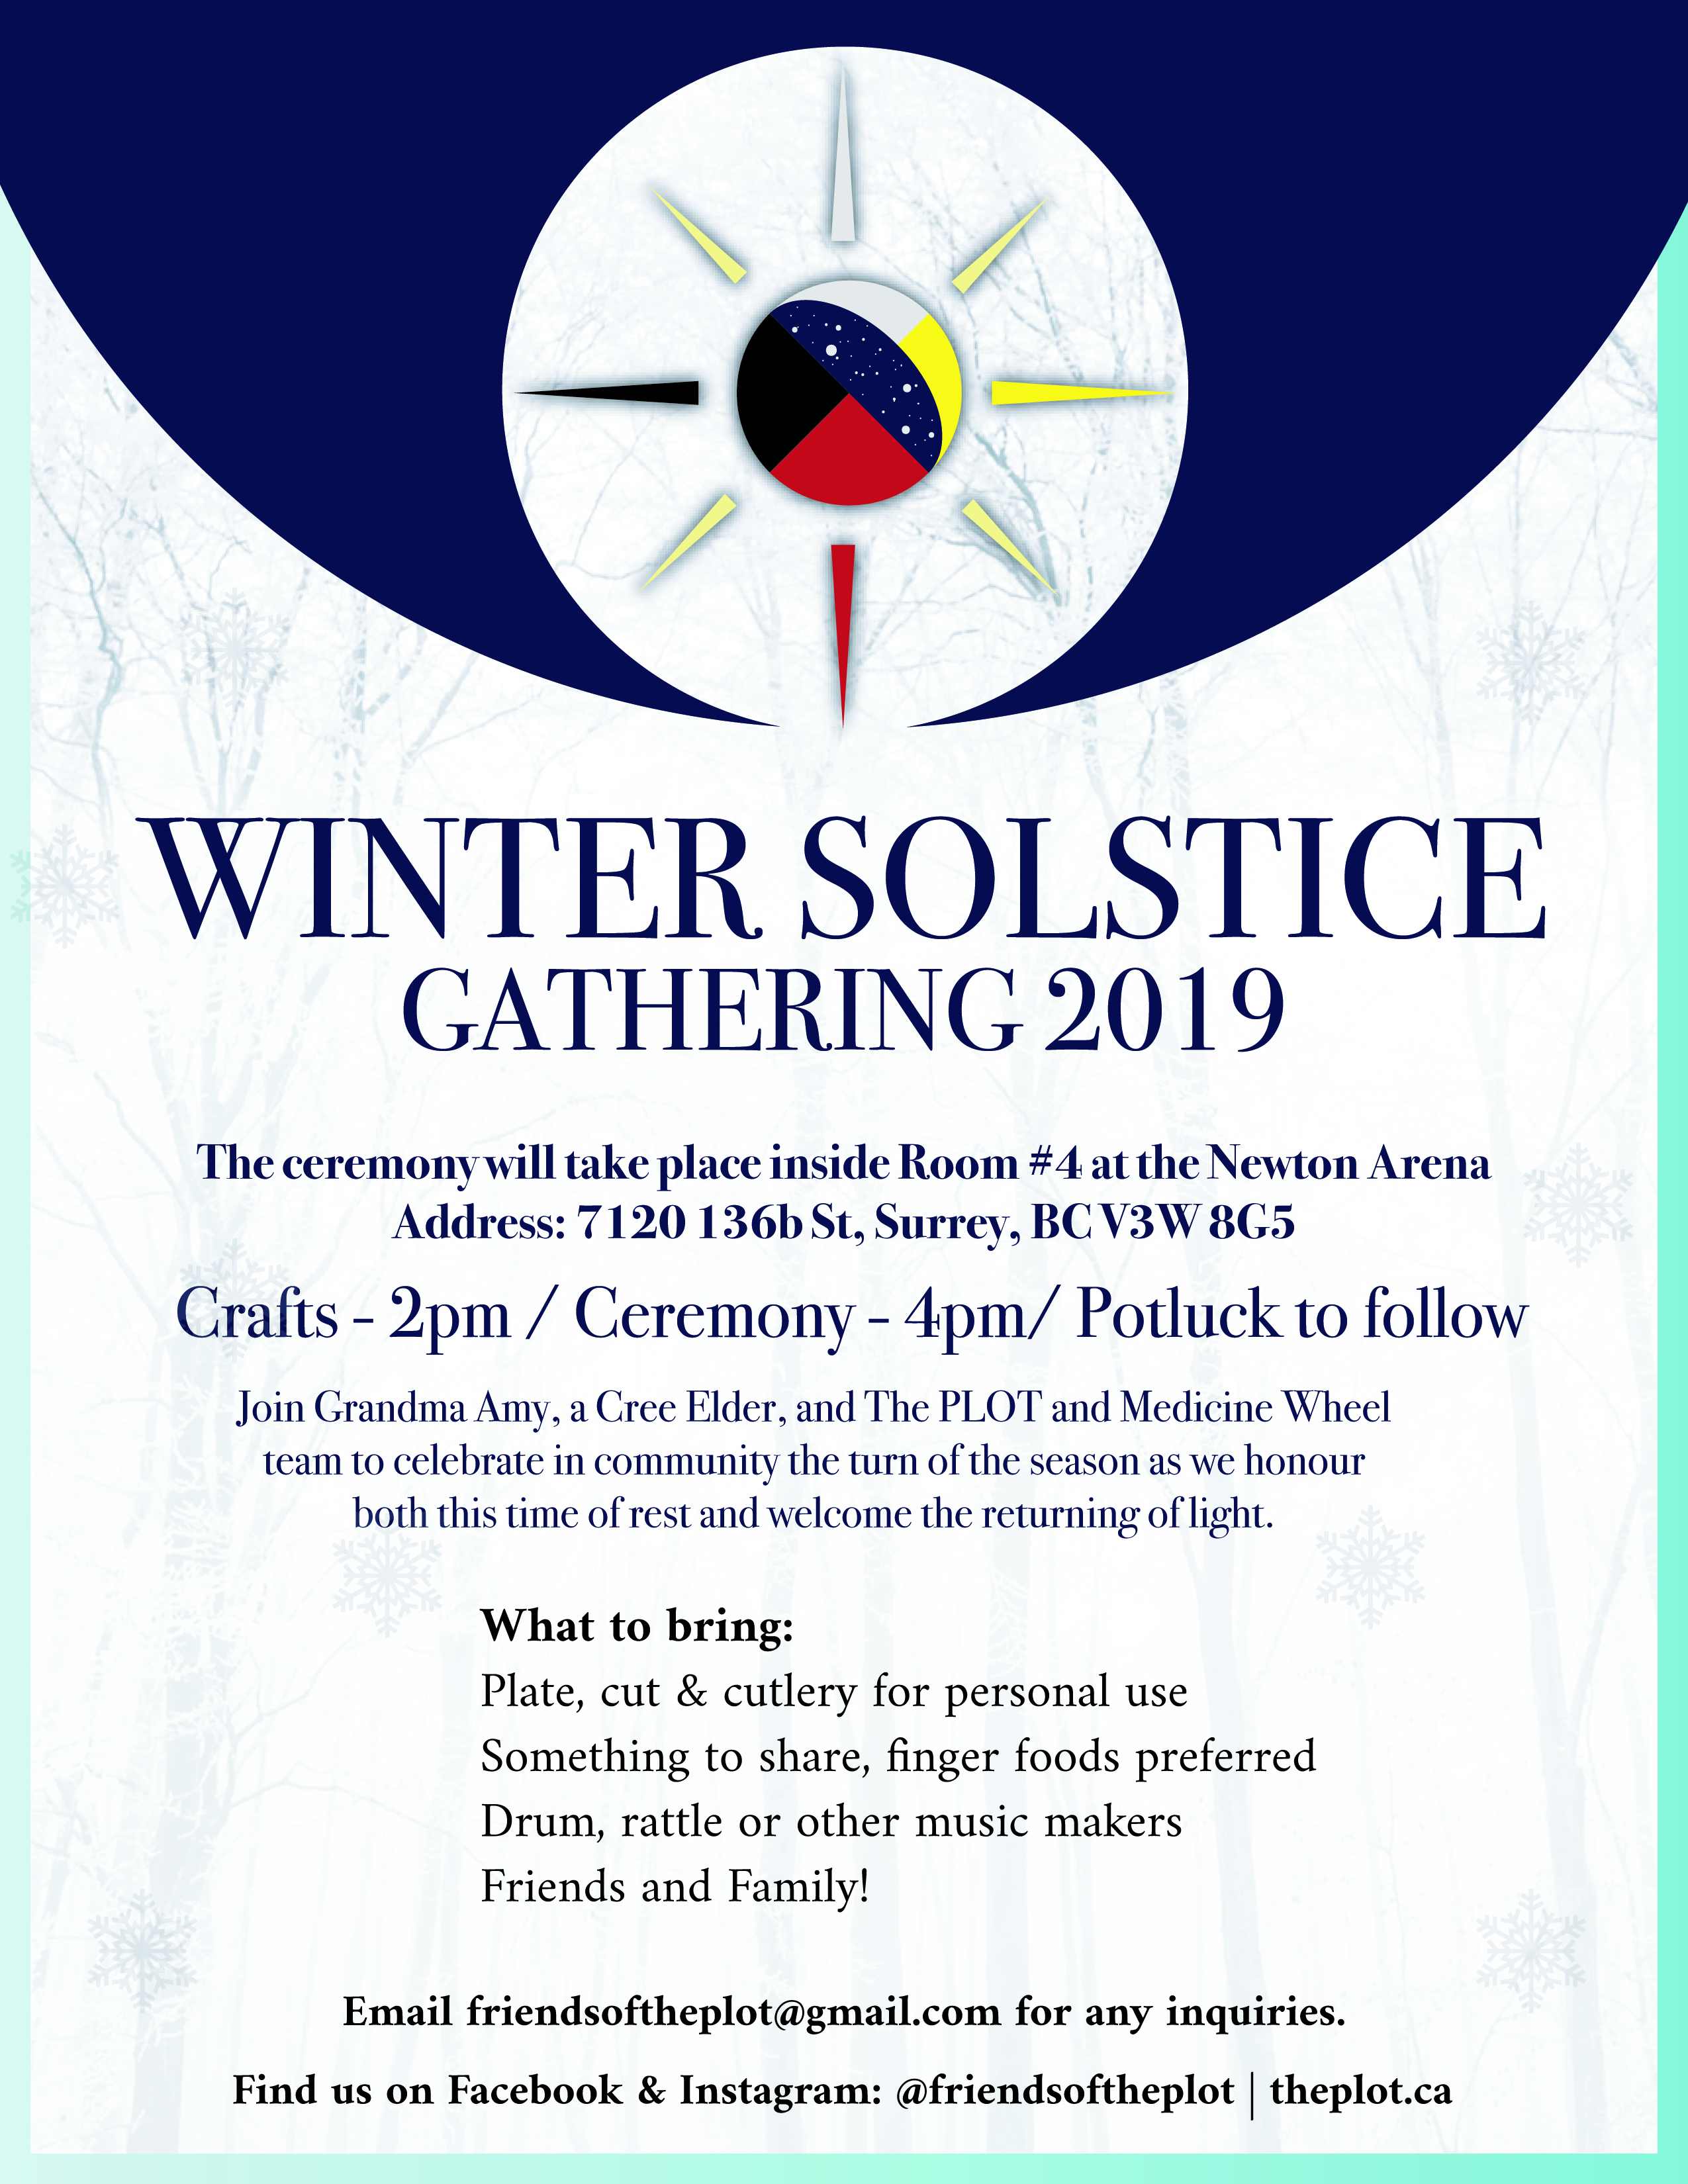 wintersolstice-2019-03